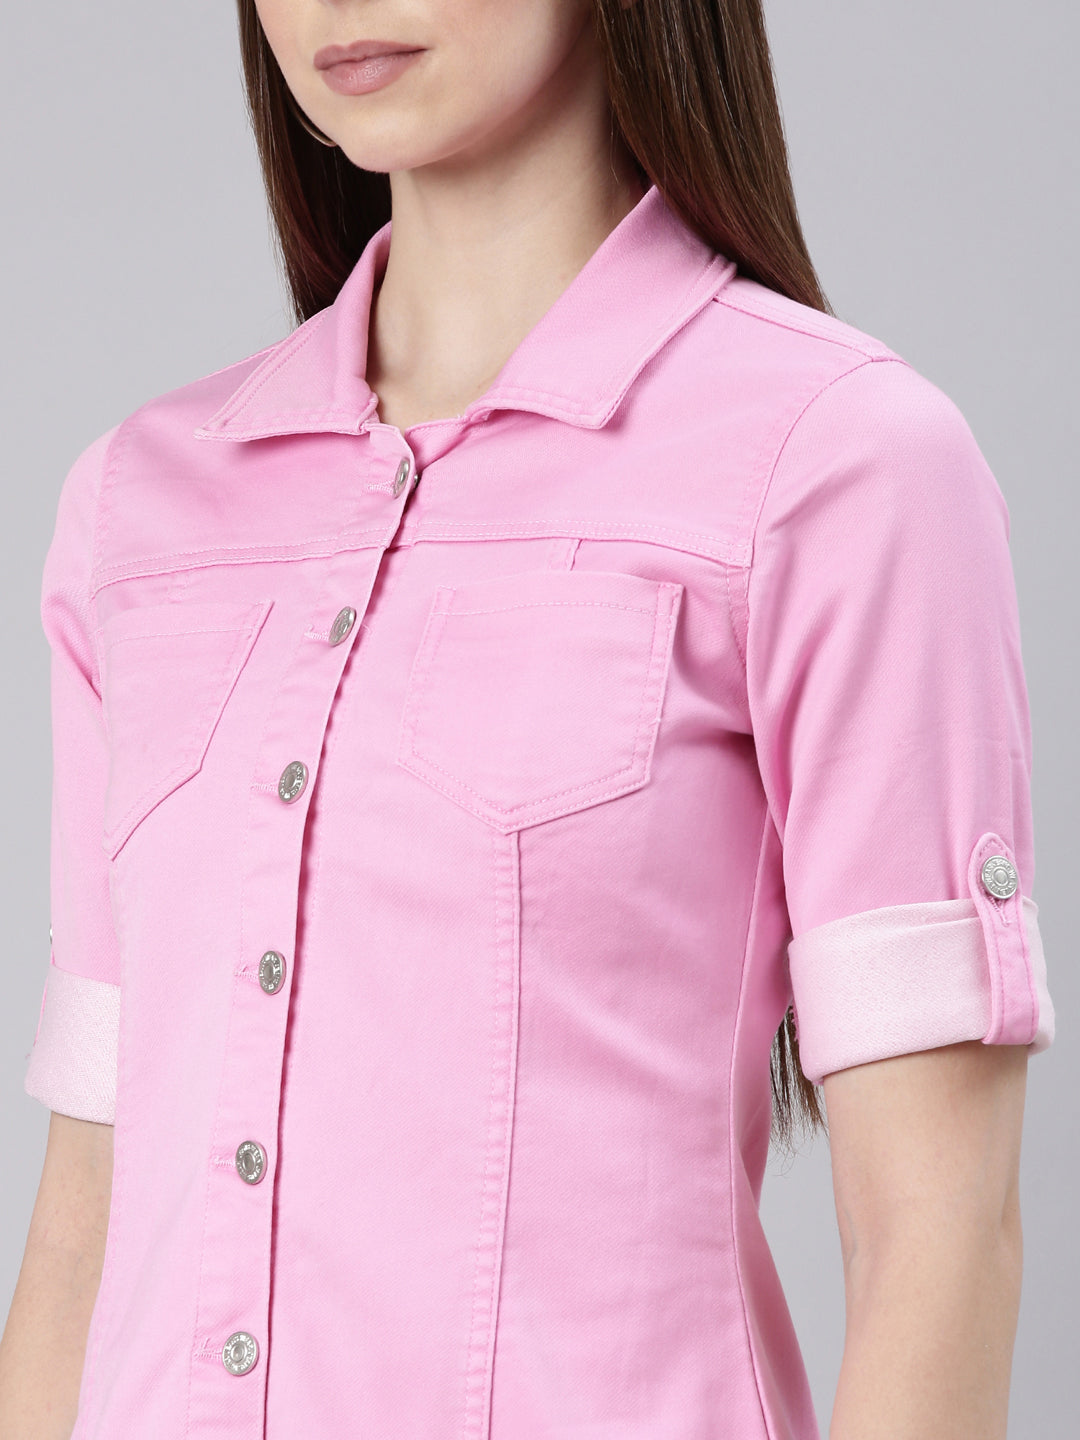 Women Pink Solid Shirt Dress